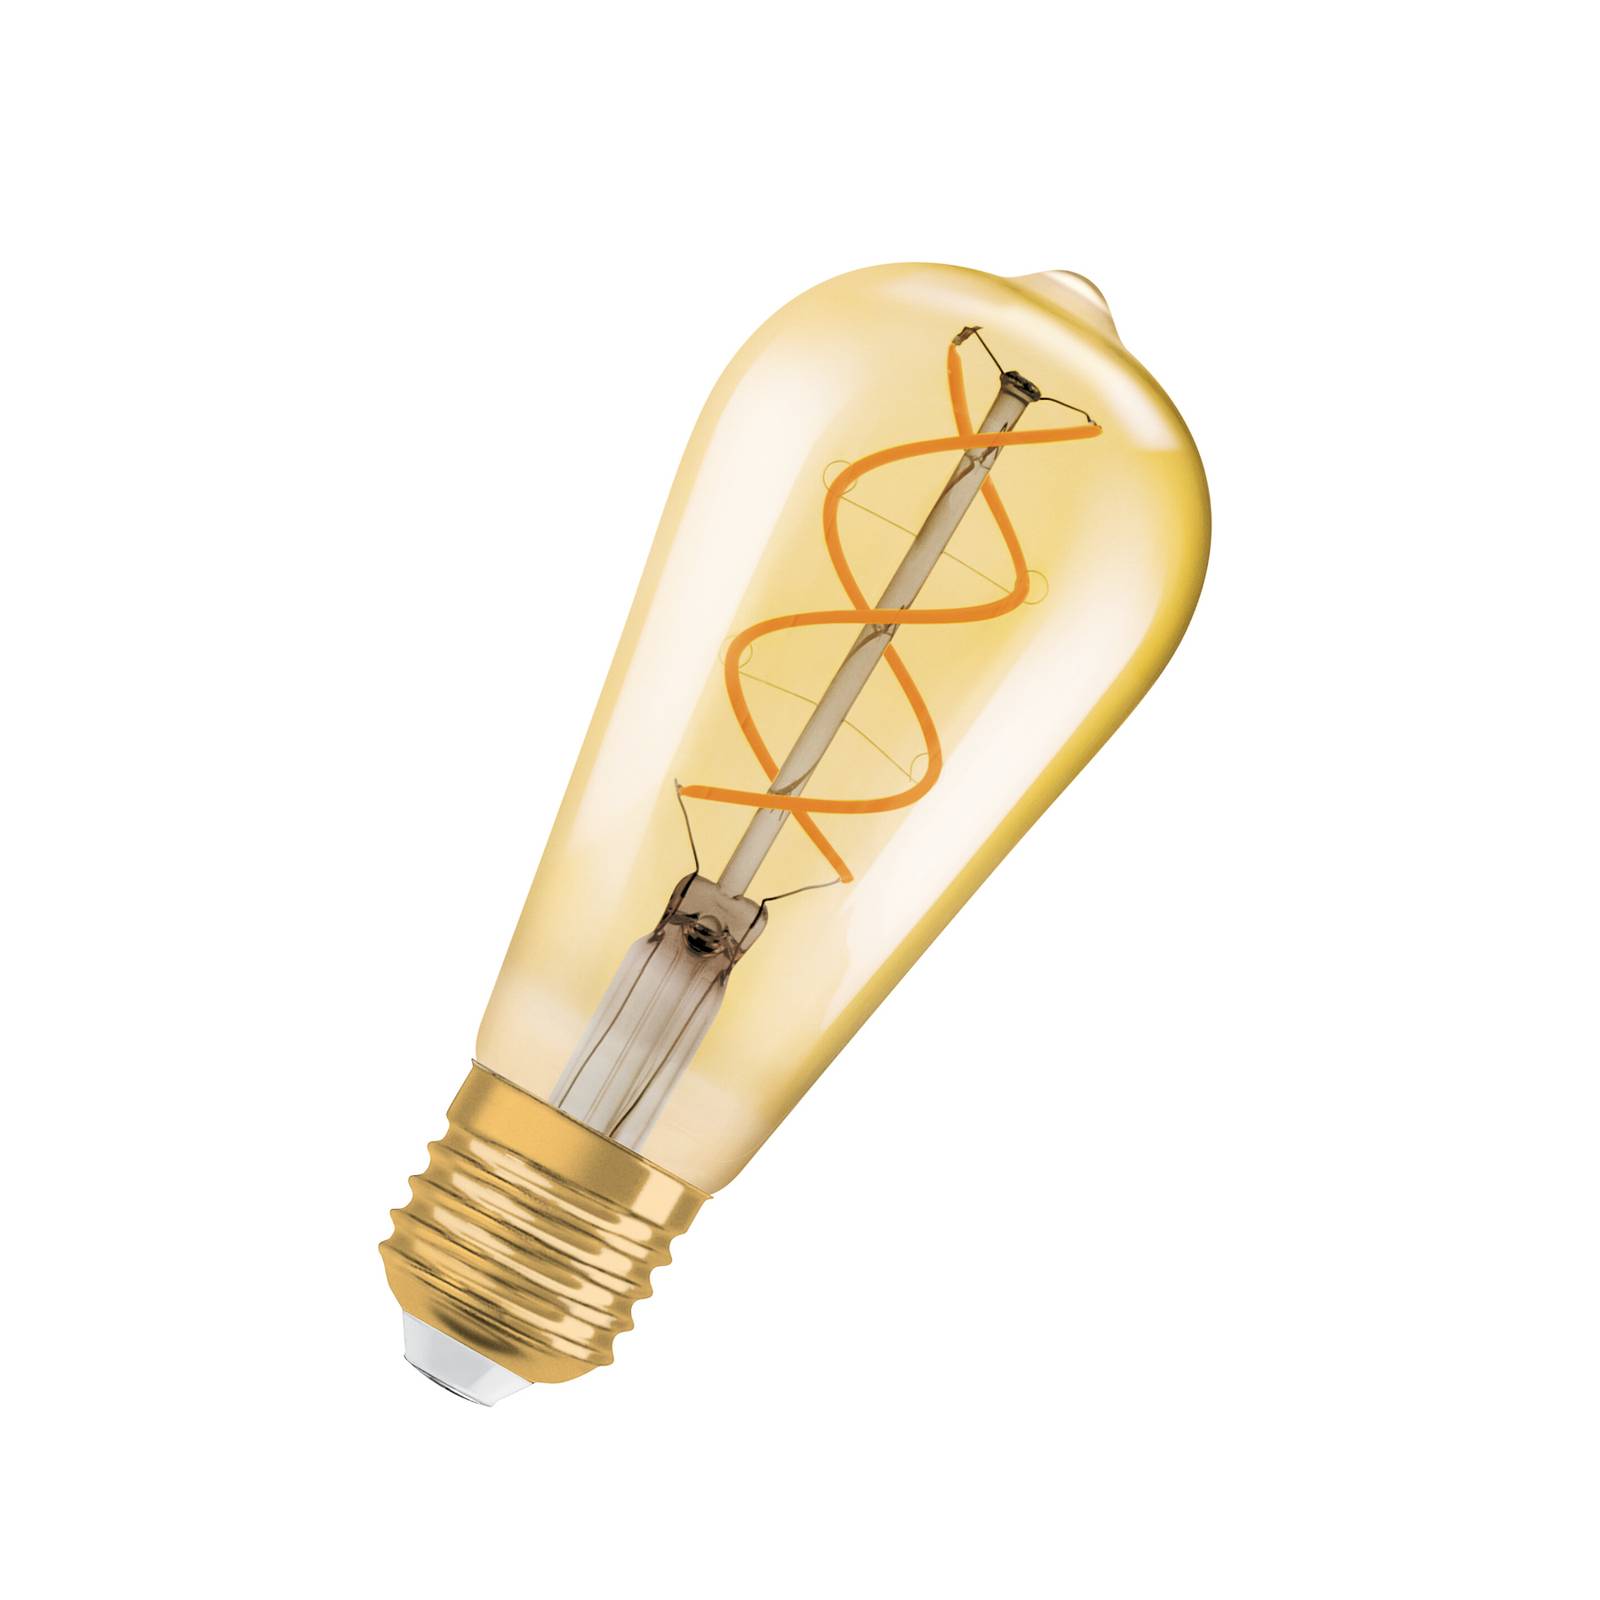 Zdjęcia - Żarówka Osram LED Vintage 1906 Edison, złota, E27, 4 W, 2000 K, ściemniana. 